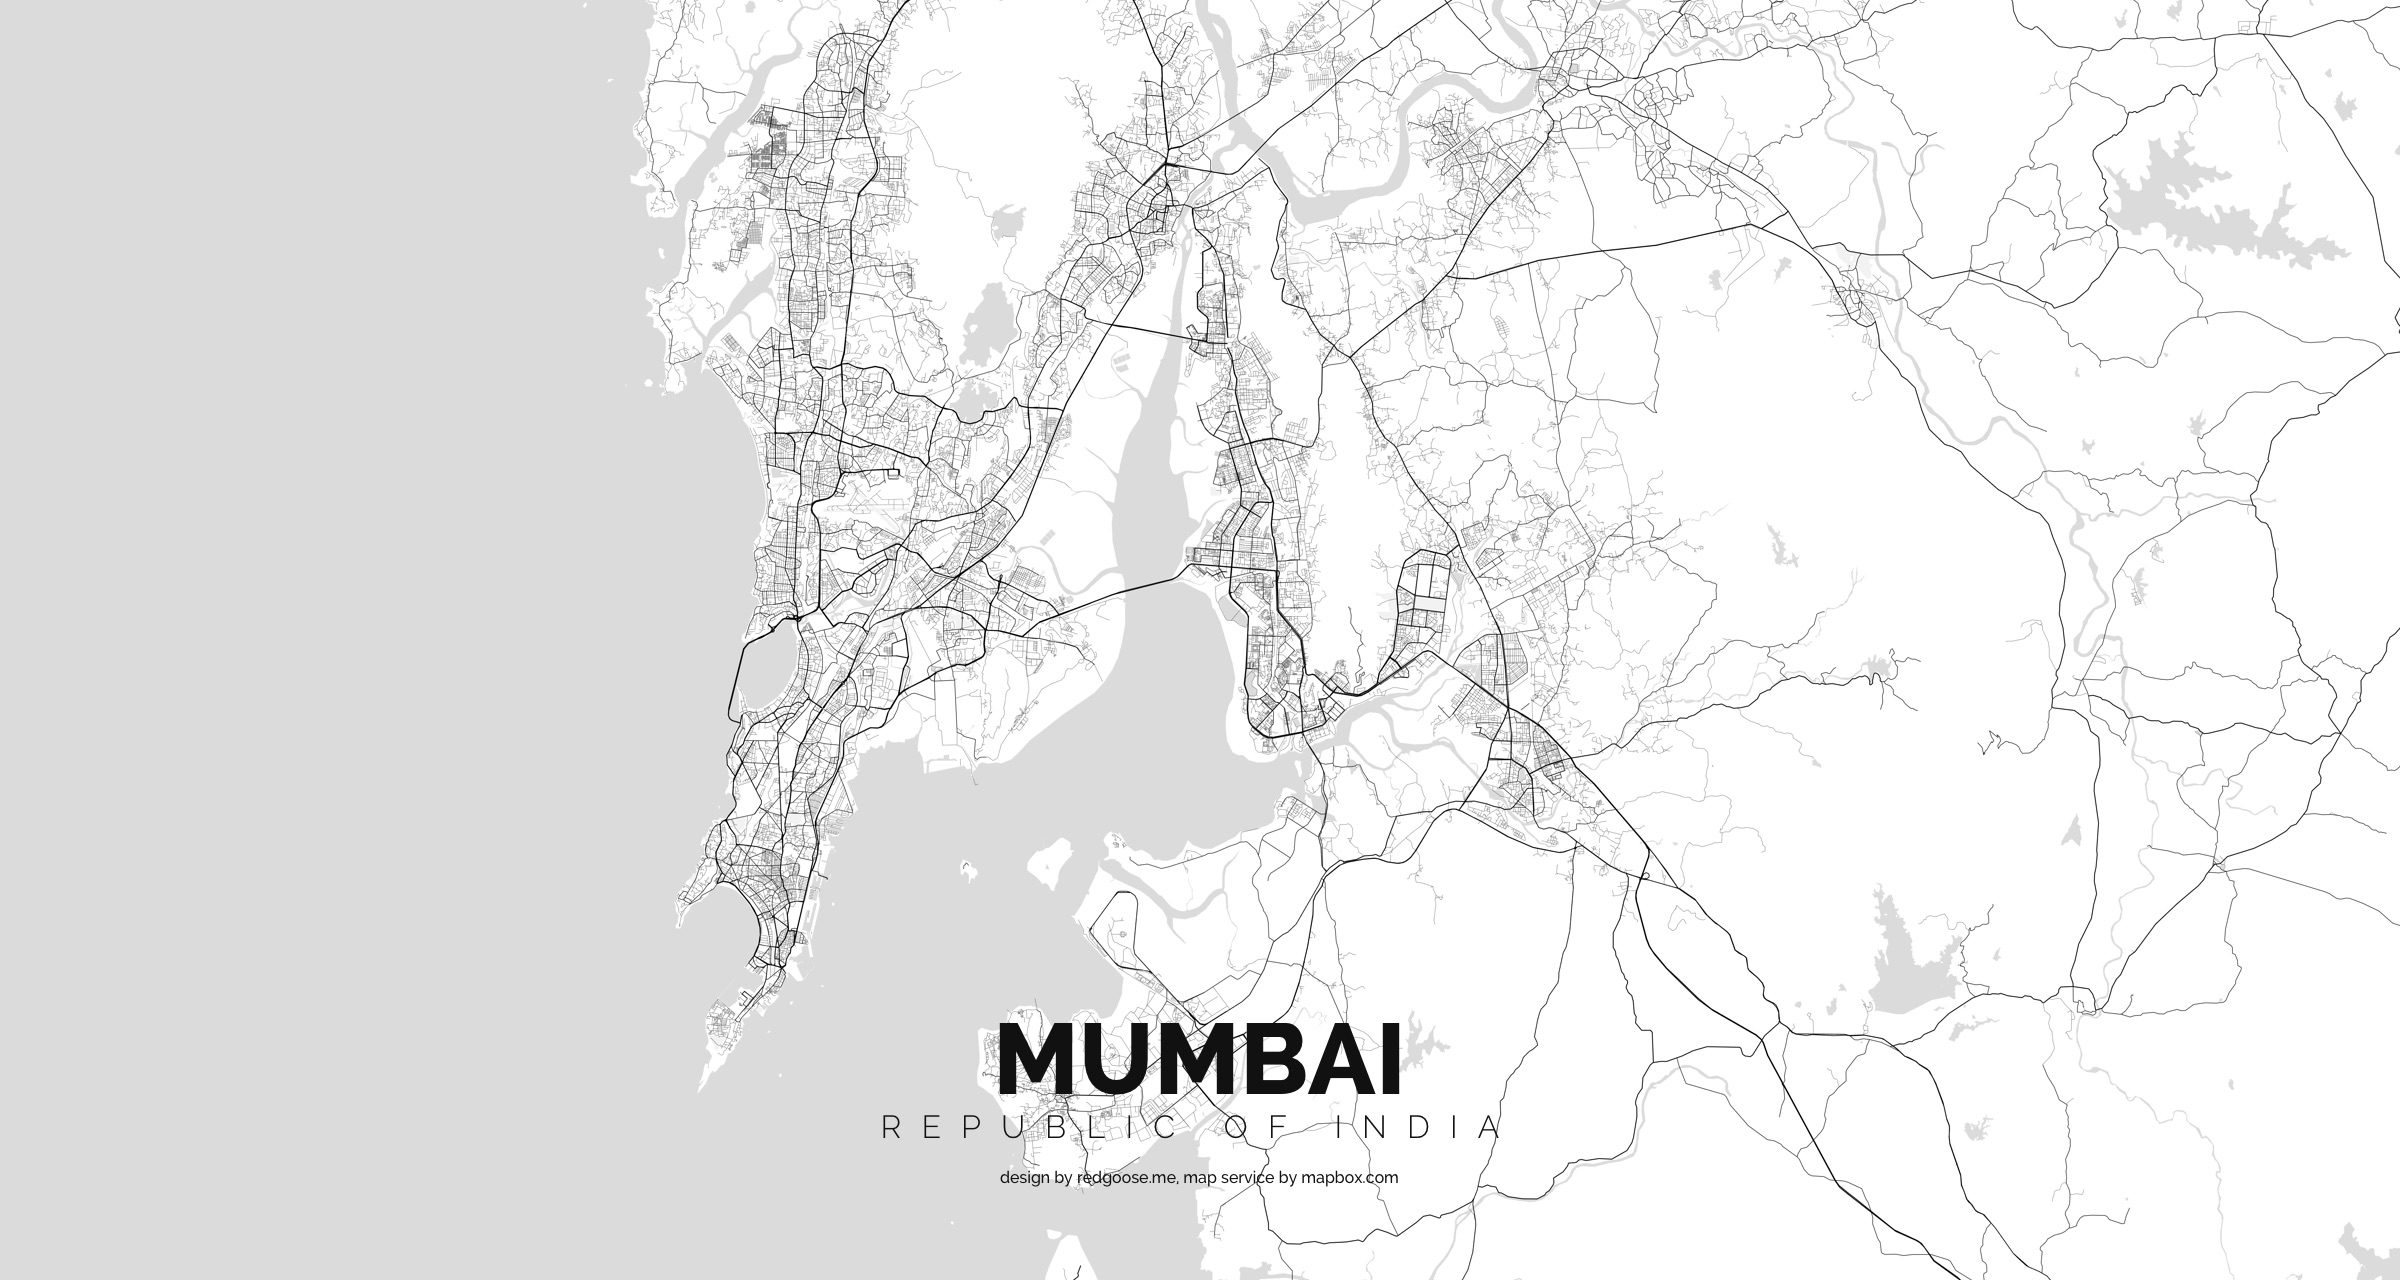 Republic_of_India_-_Mumbai.jpg